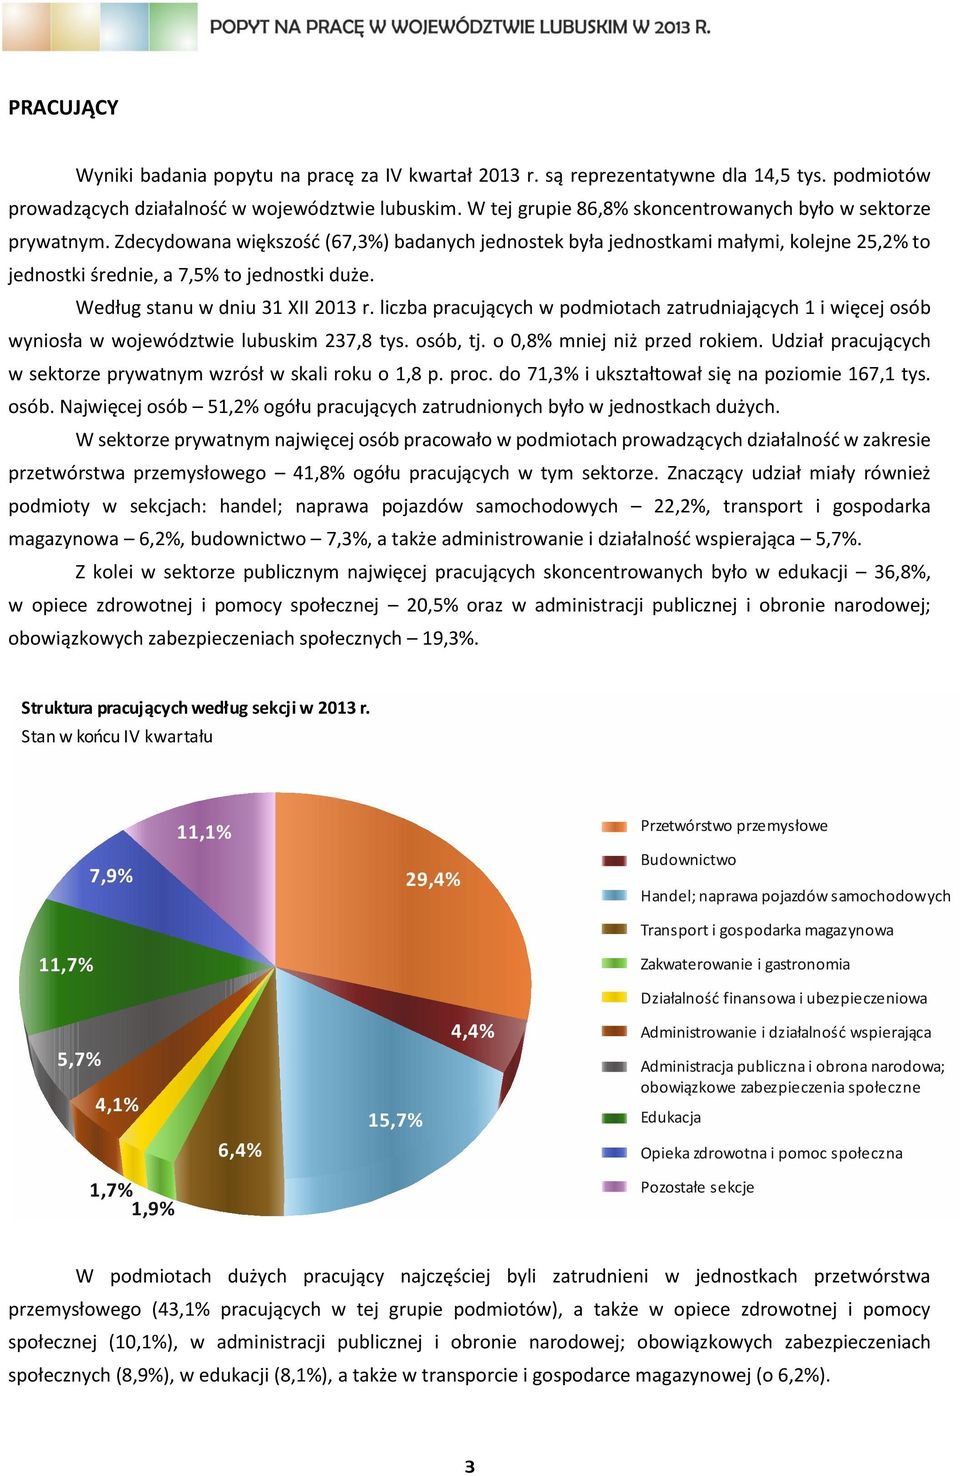 Według stanu w dniu 31 XII 2013 r. liczba pracujących w podmiotach zatrudniających 1 i więcej osób wyniosła w województwie lubuskim 237,8 tys. osób, tj. o 0,8% mniej niż przed rokiem.